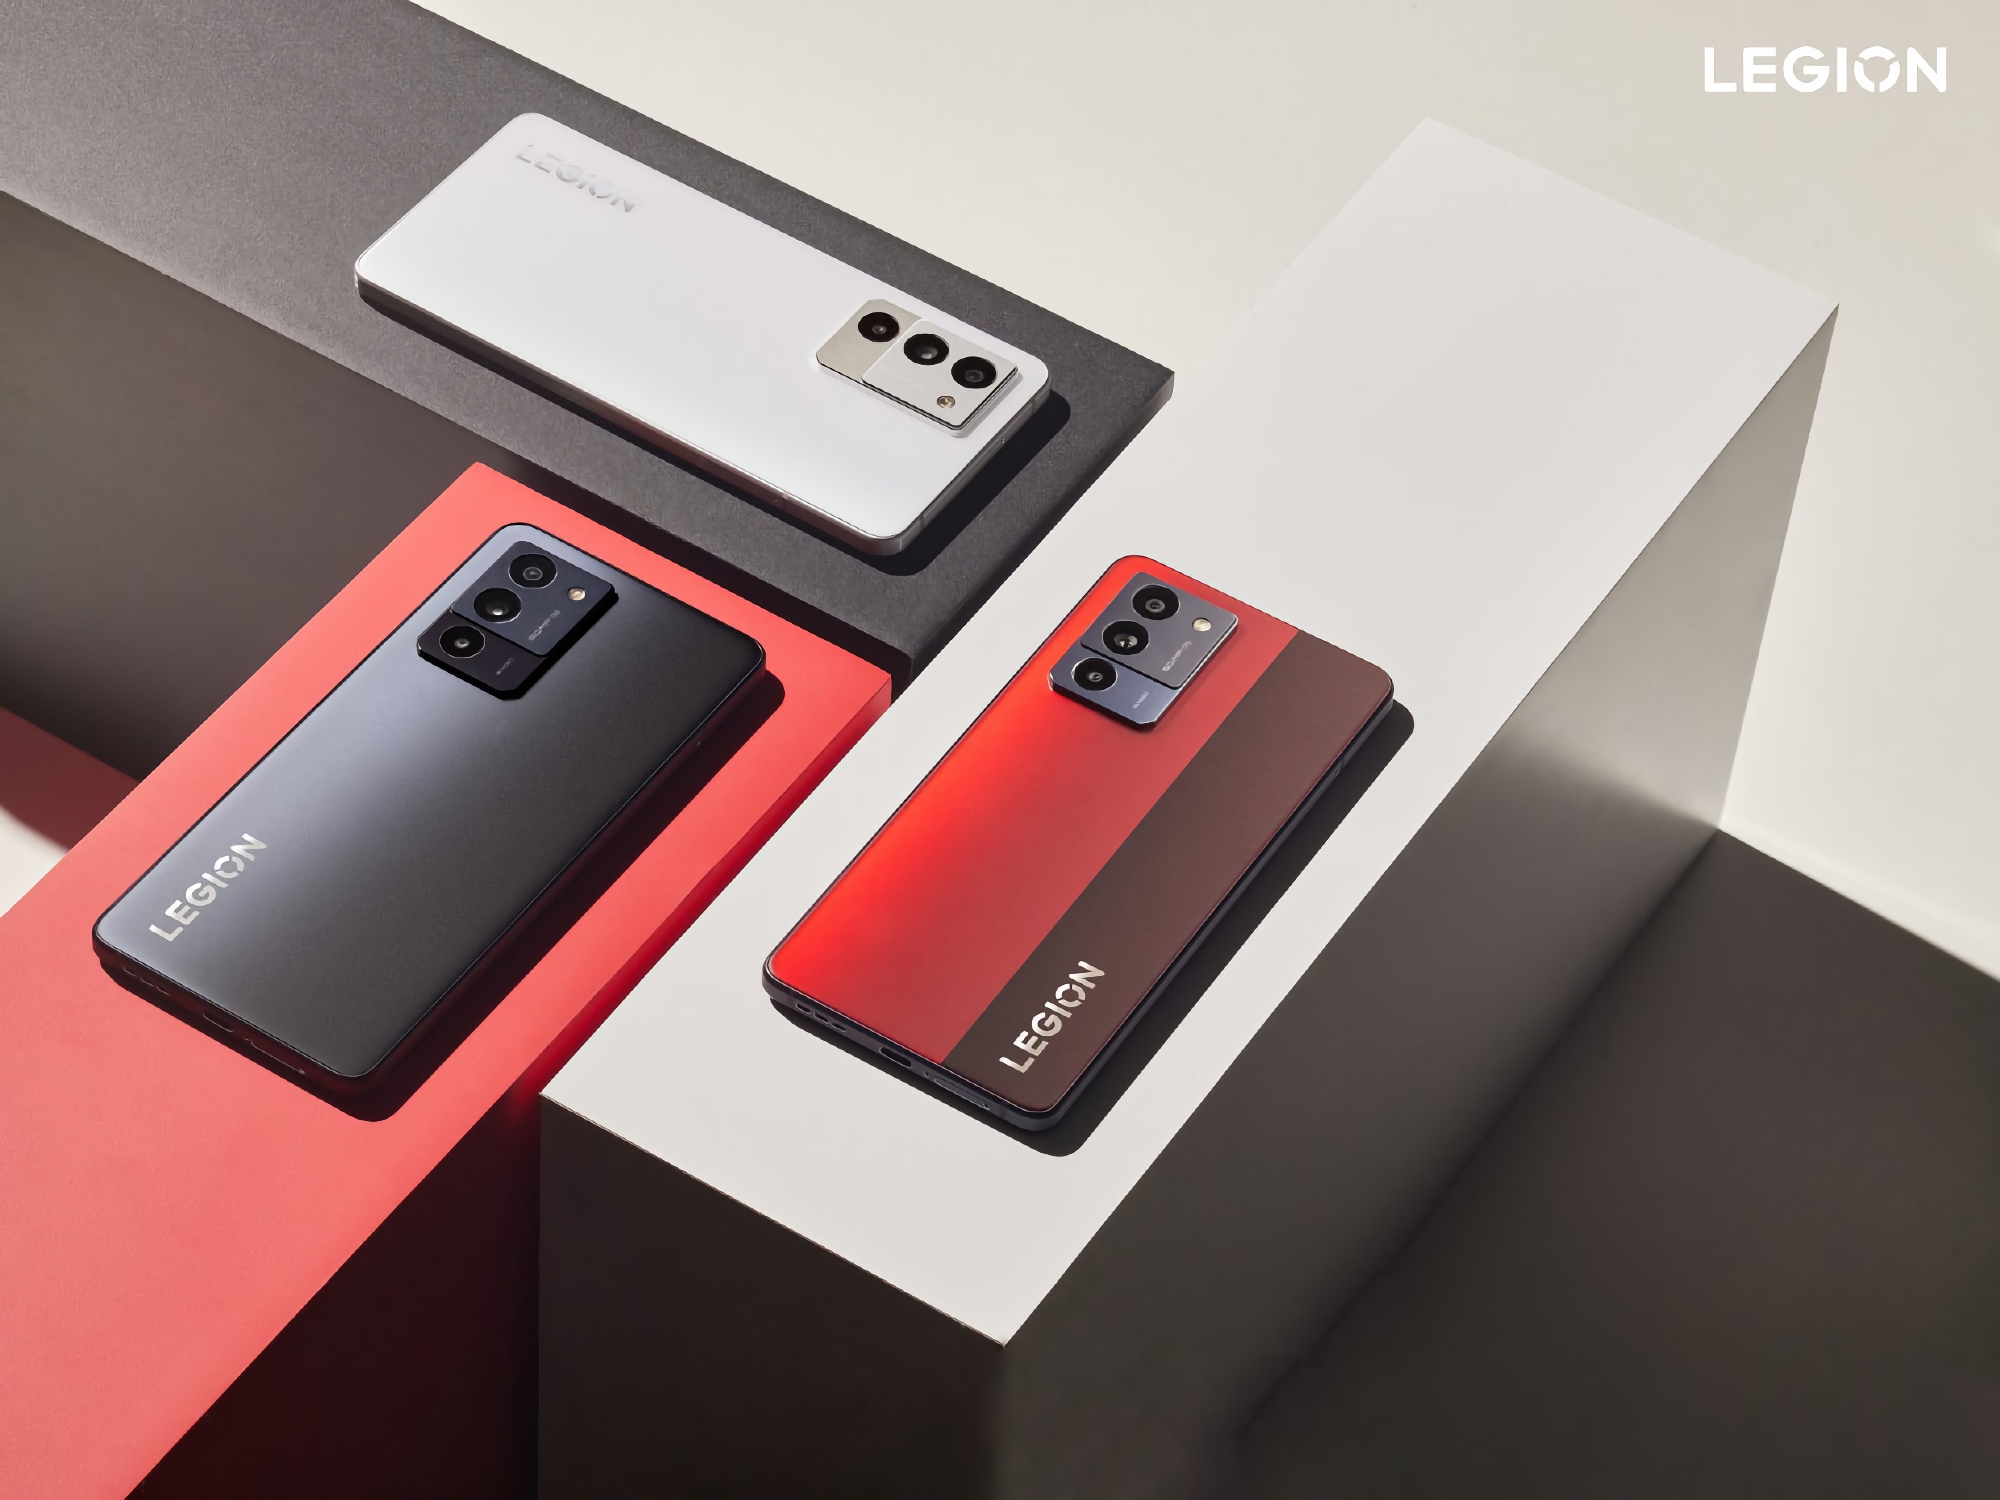 Insider enthüllt das Aussehen des Lenovo Legion Y70: Gaming-Smartphone mit Snapdragon 8+ Gen1-Chip und 5000 mAh-Akku